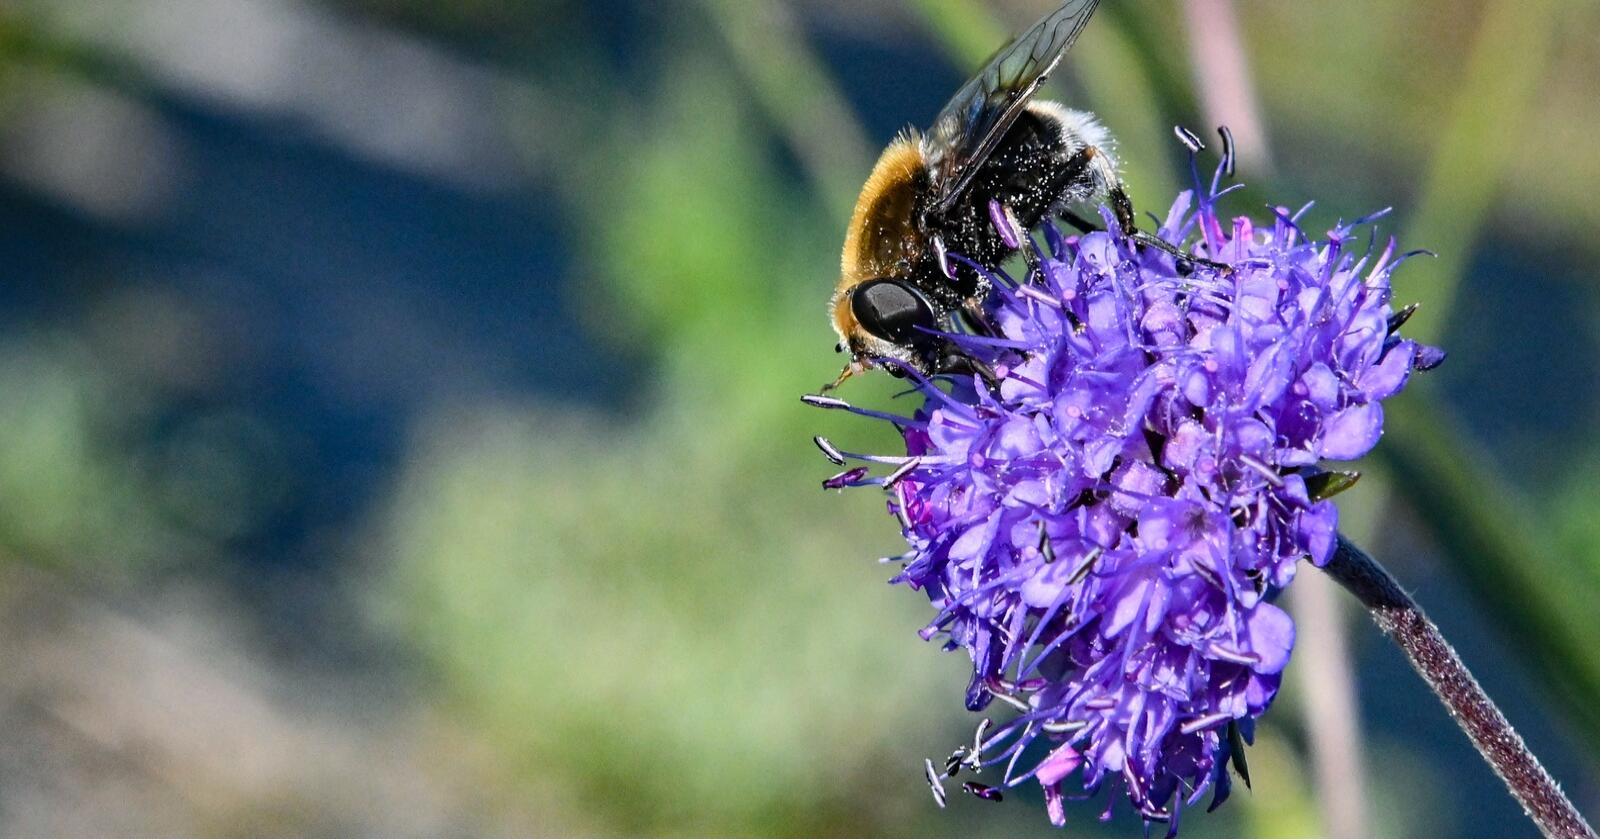 Humler er viktige for pollinering av både ville blomster og mange kulturplanter. Det finnes 35 arter av humler i Norge, i følge Store norske leksikon. Bildet viser en av humleartene på blåknappblomst. (Foto: Marie Hatlevoll)